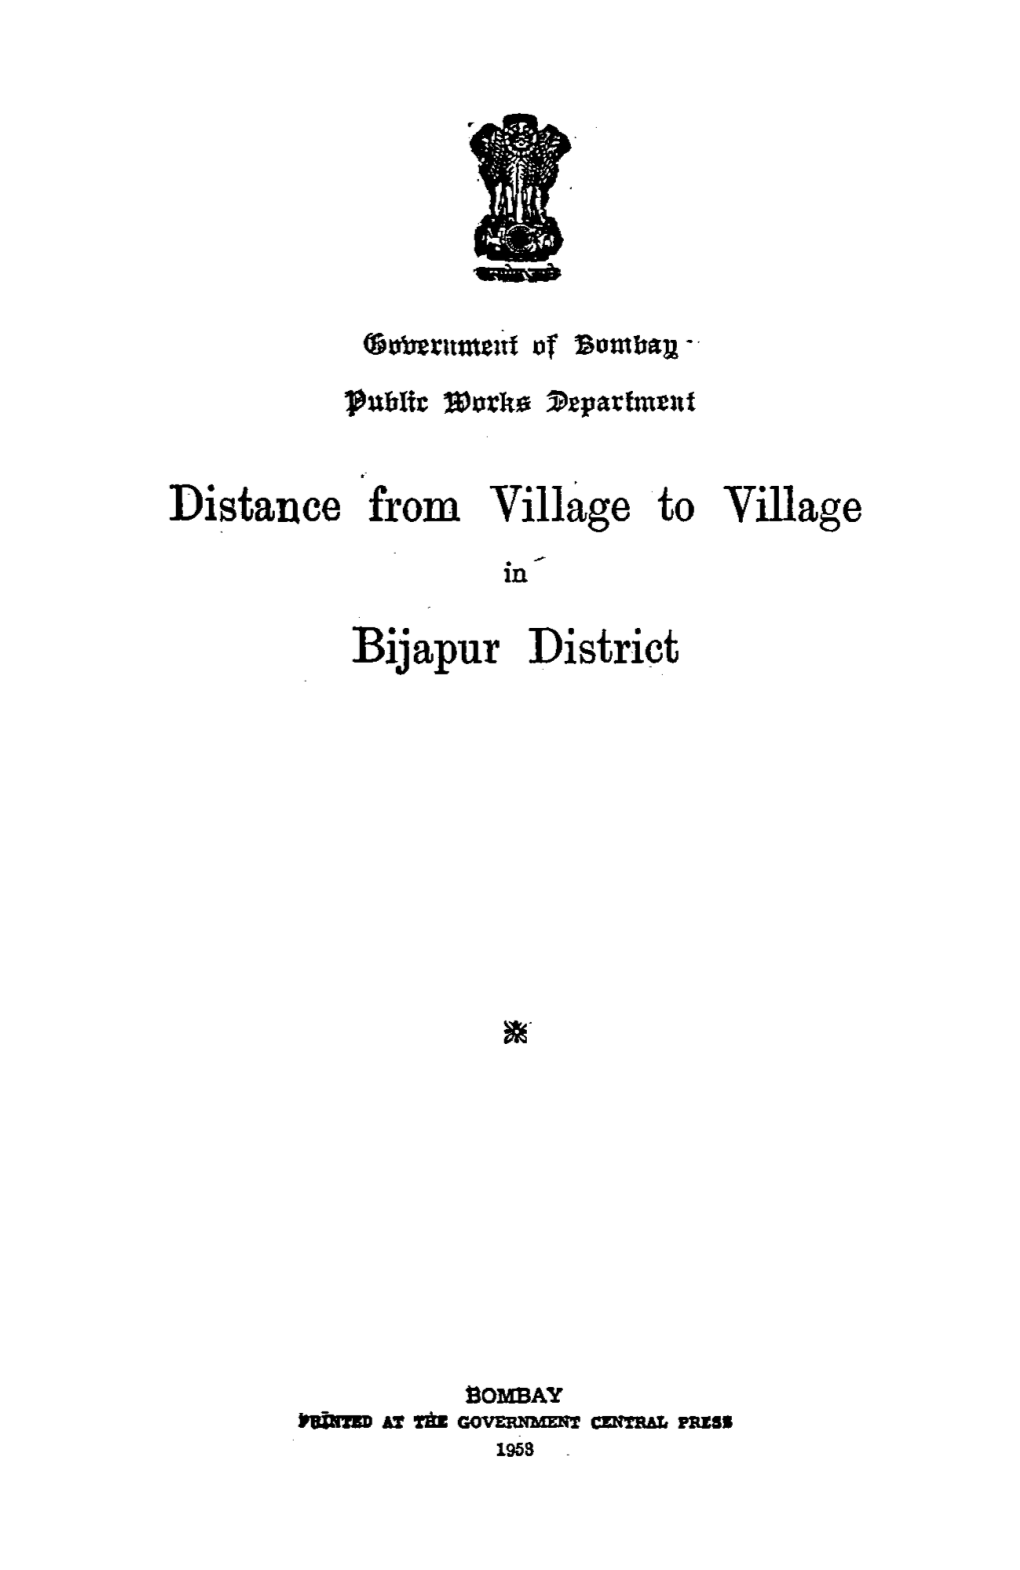 Distance from Vilh1ge to Village Bijapur District